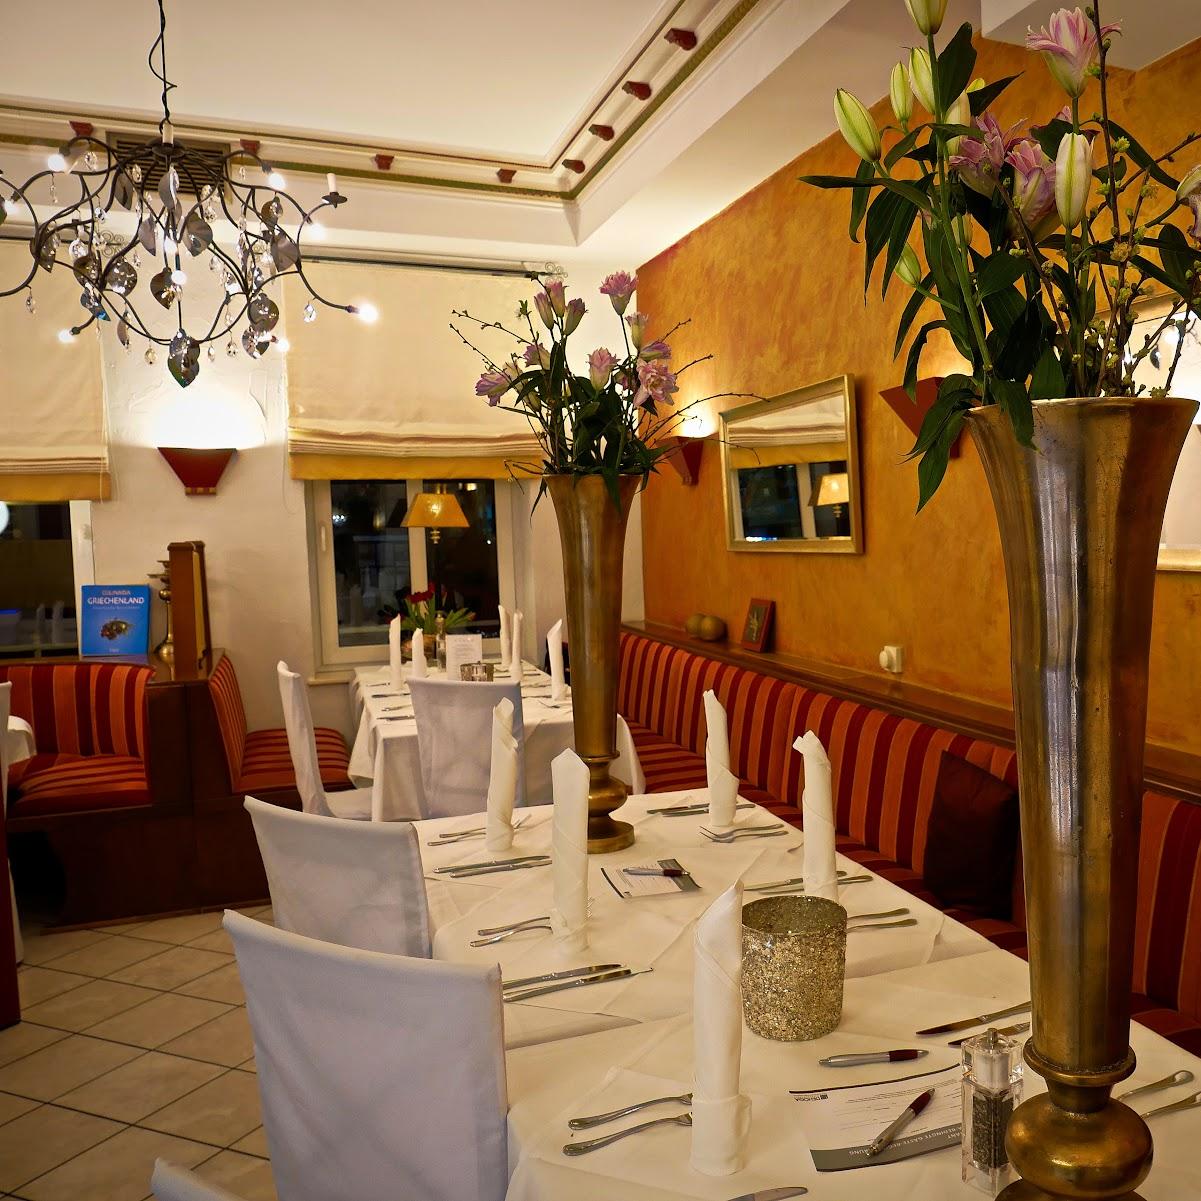 Restaurant "Restaurant Athen - Apostolos & Freunde" in Bad Essen